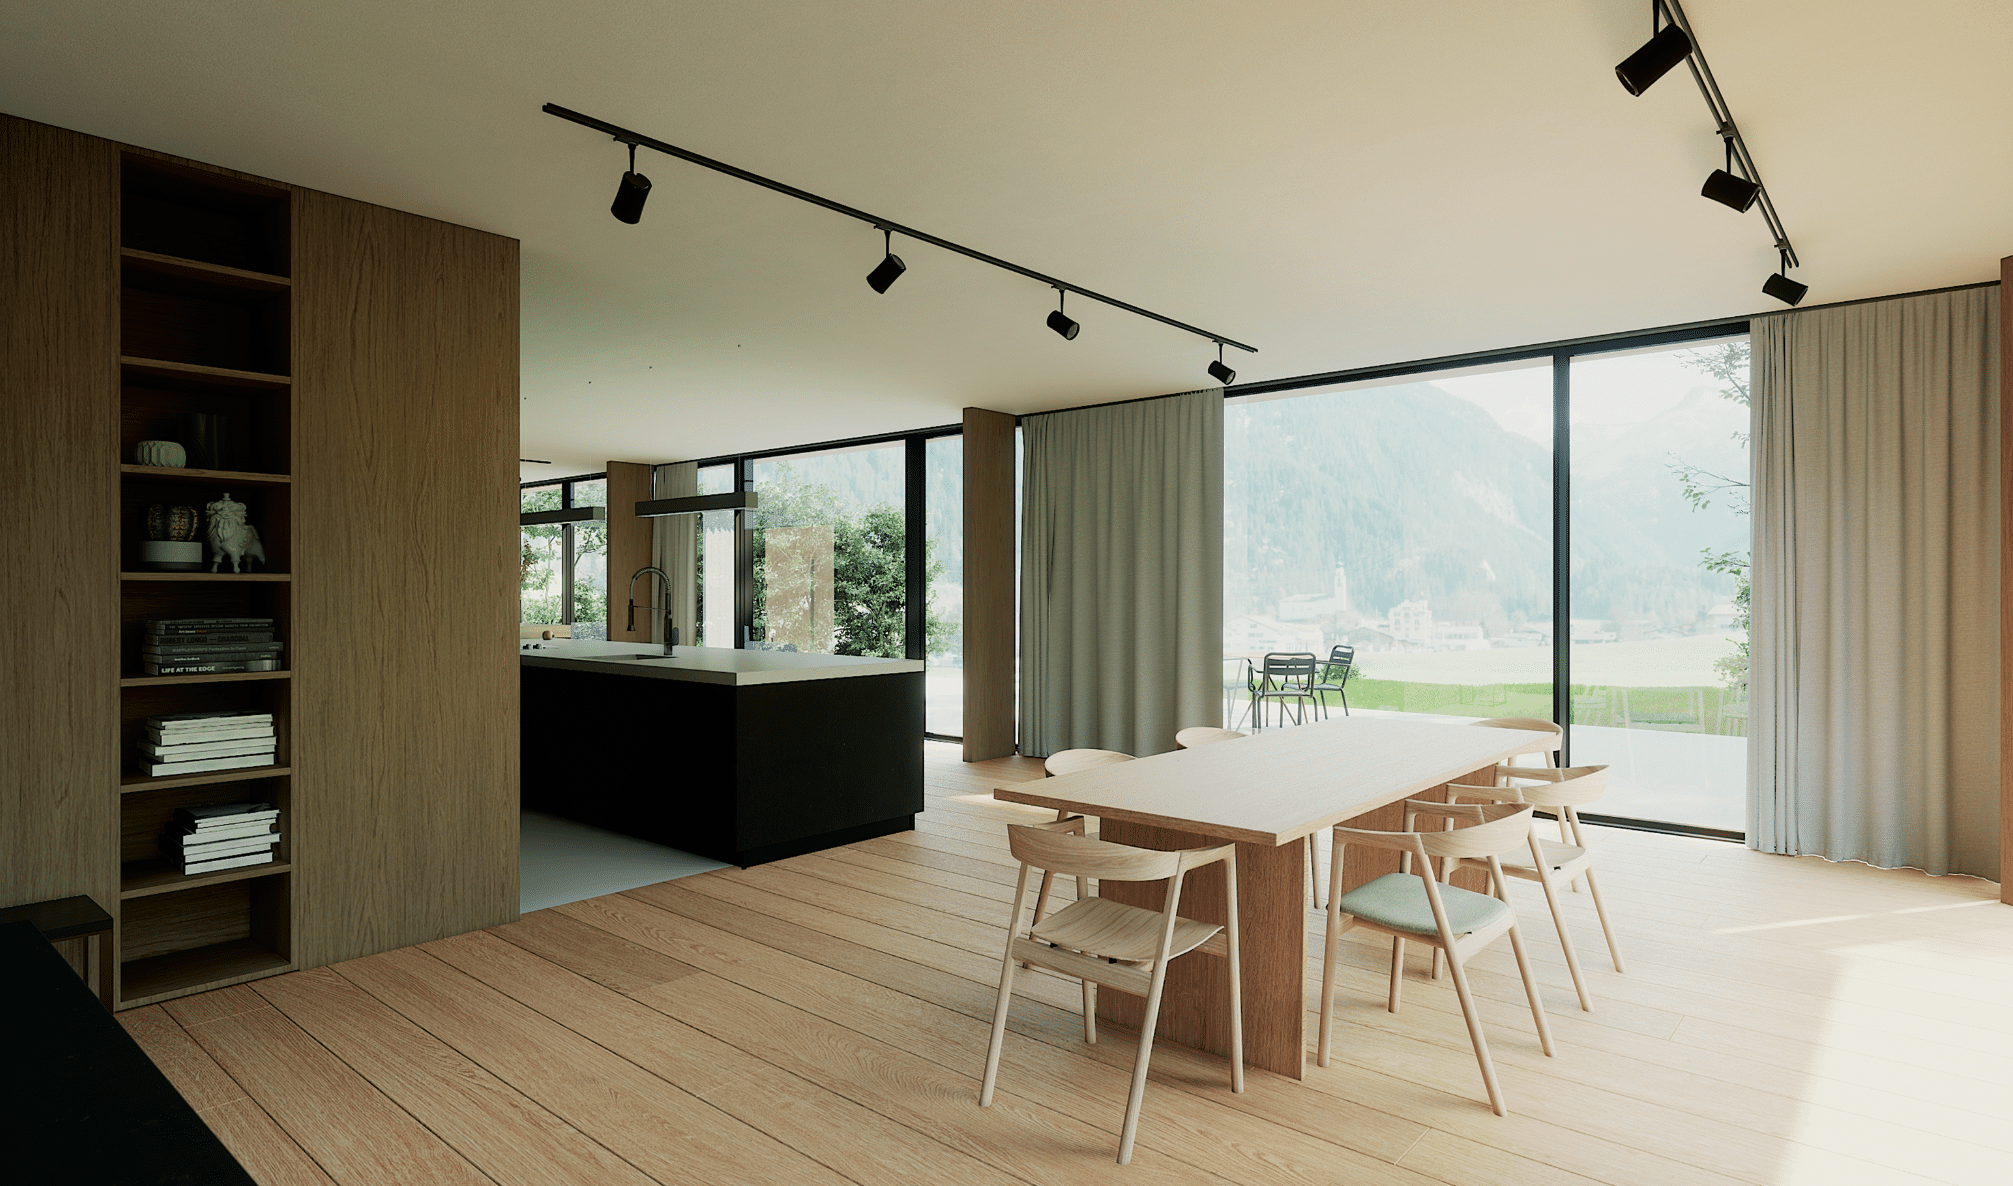 Solarlux zeigt einen hellen Essbereich mit Holzboden und großer Sitzgruppe, bestehend aus einem Holztisch und dazu passenden Stühlen und mit Glasschiebetüren durch die man eine schöne Aussicht ins Grüne hat.